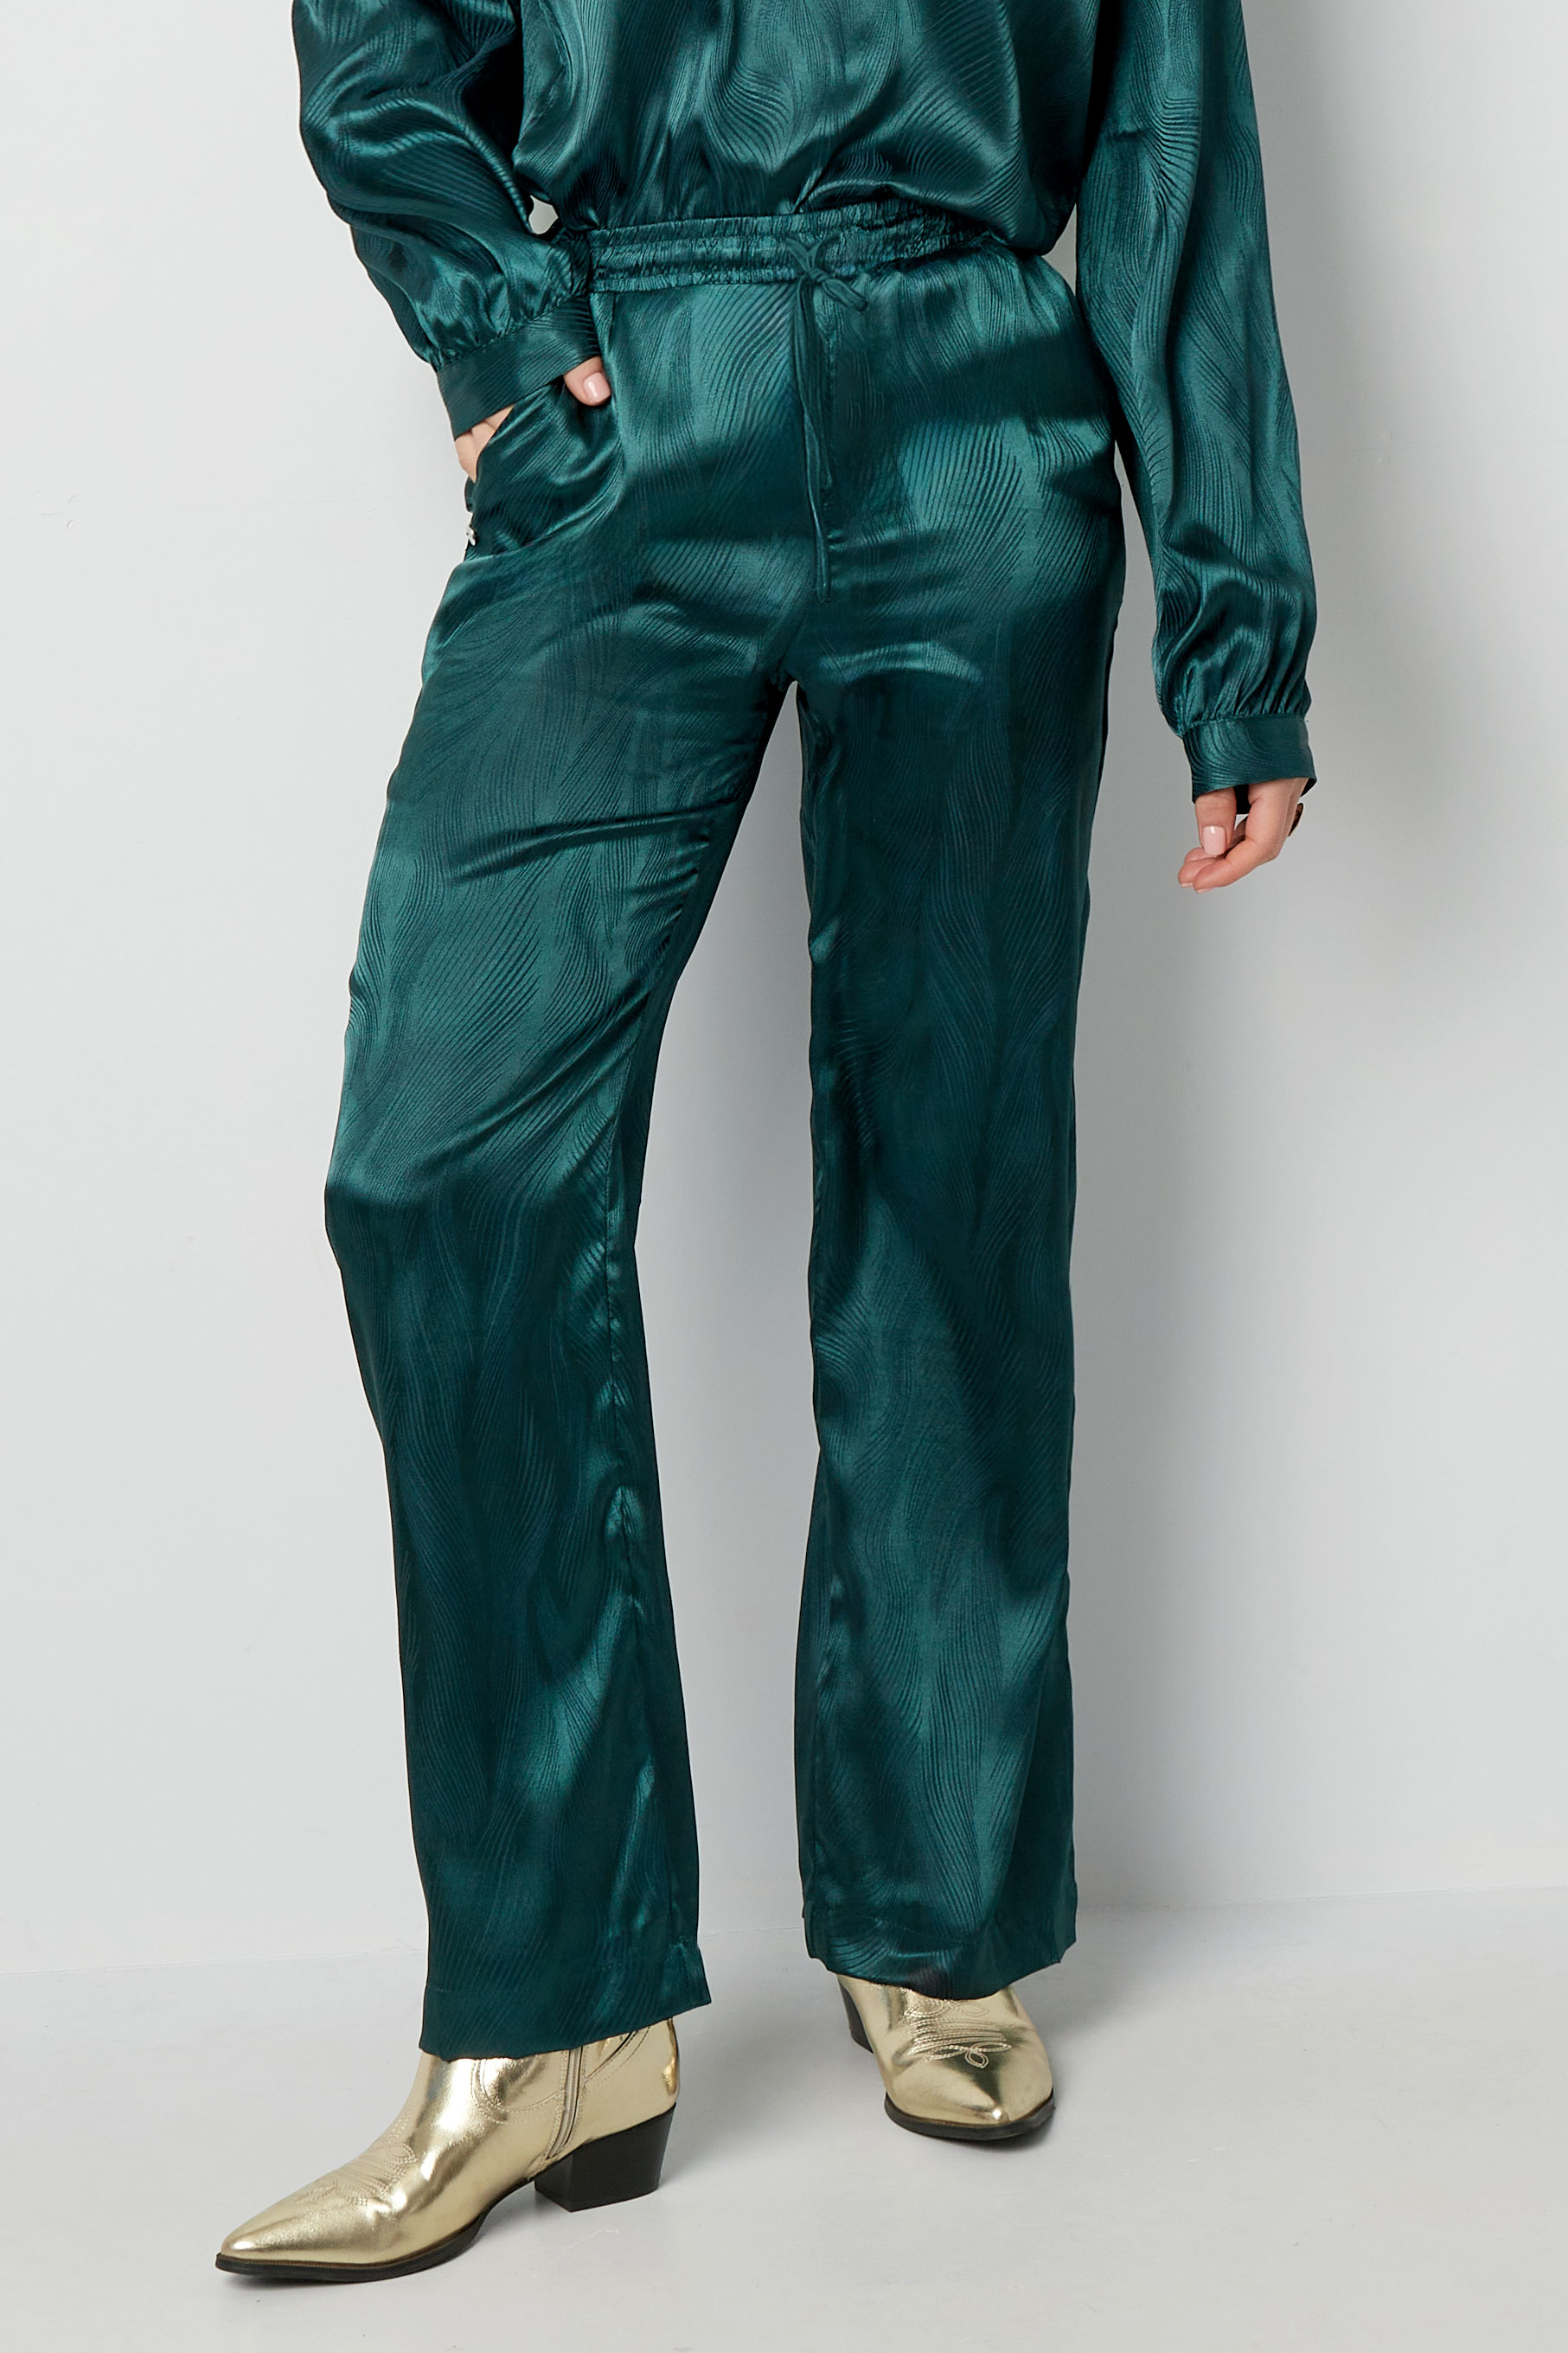 Satijnen broek met print - groen h5 Afbeelding2